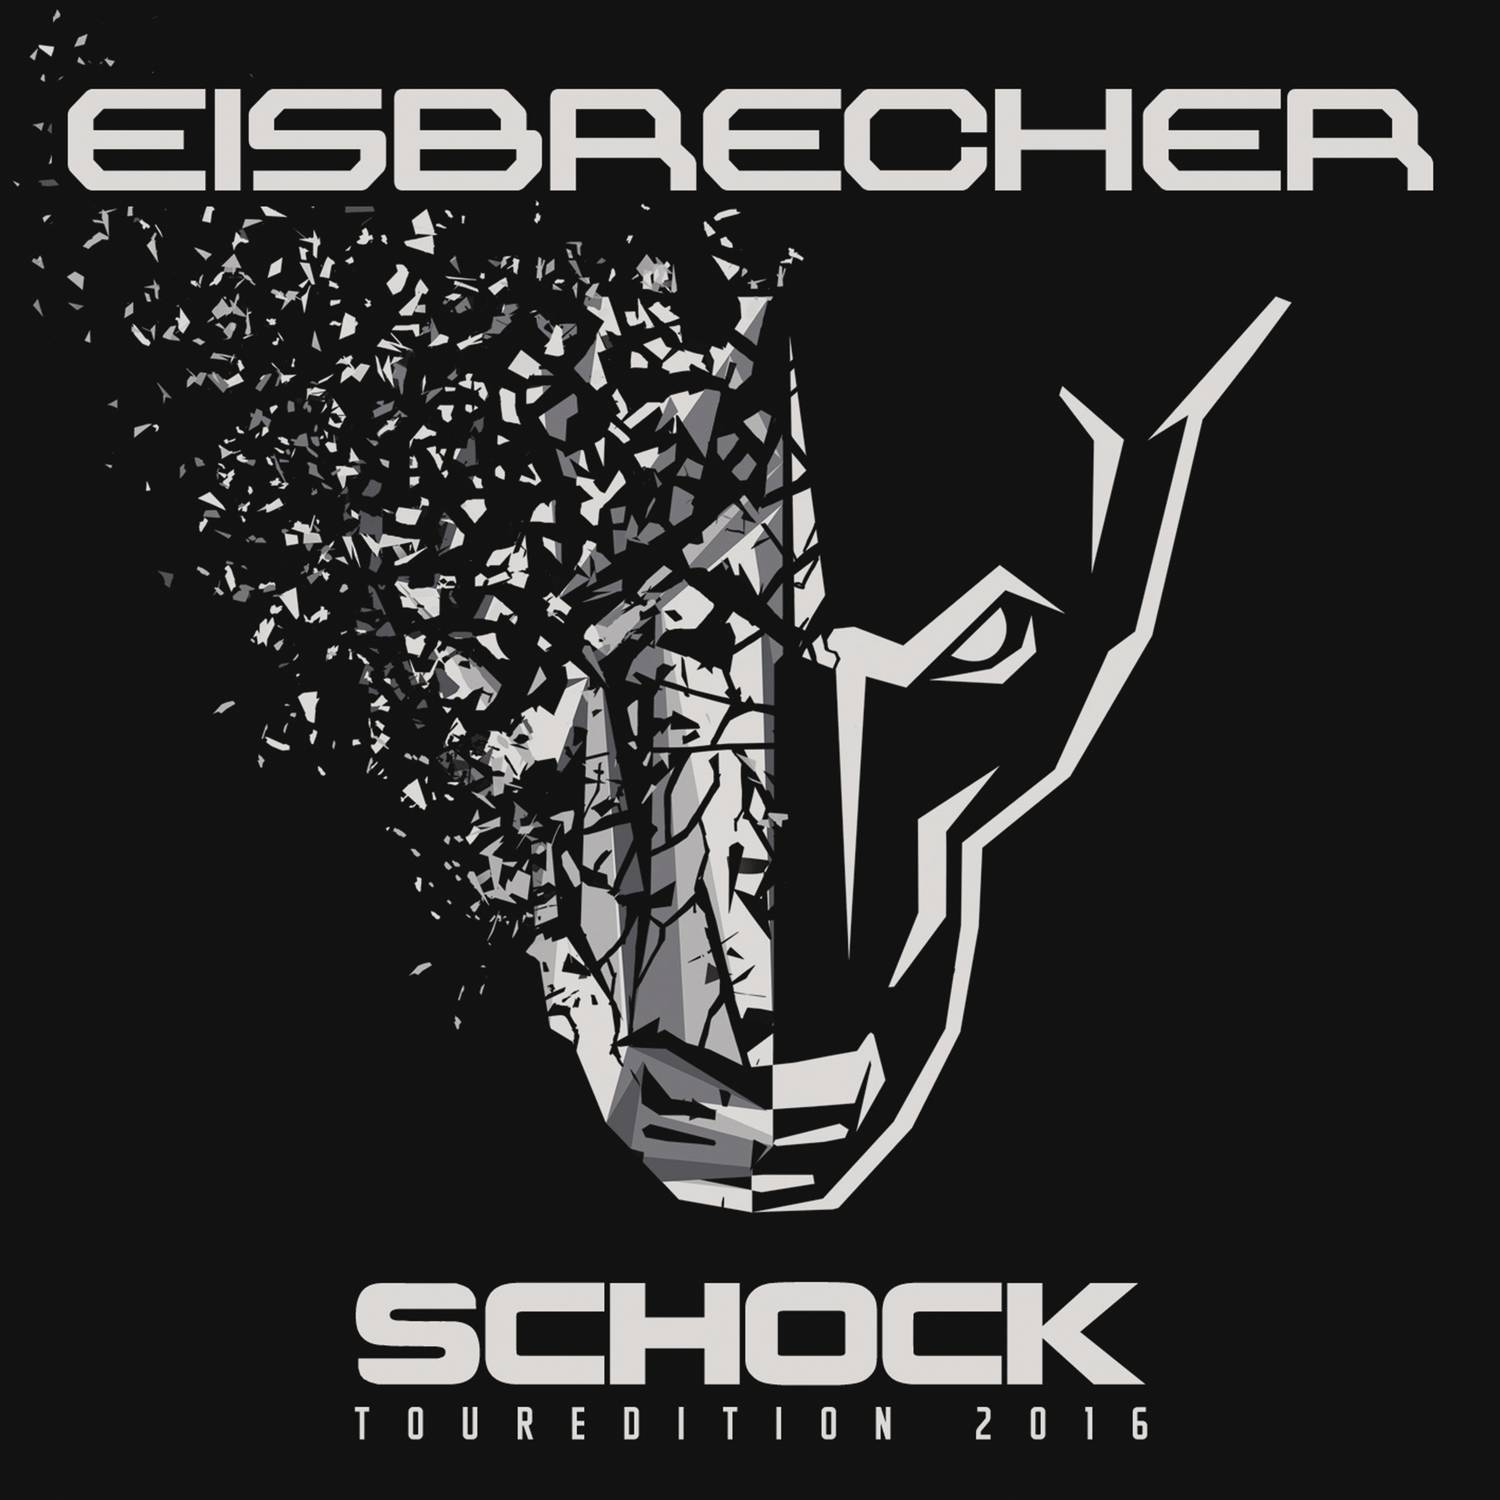 Eisbrecher rot wie liebe. Eisbrecher логотип группы. Eisbrecher Shock обложка. Eisbrecher Eiszeit обложка. Eisbrecher обложки альбомов.